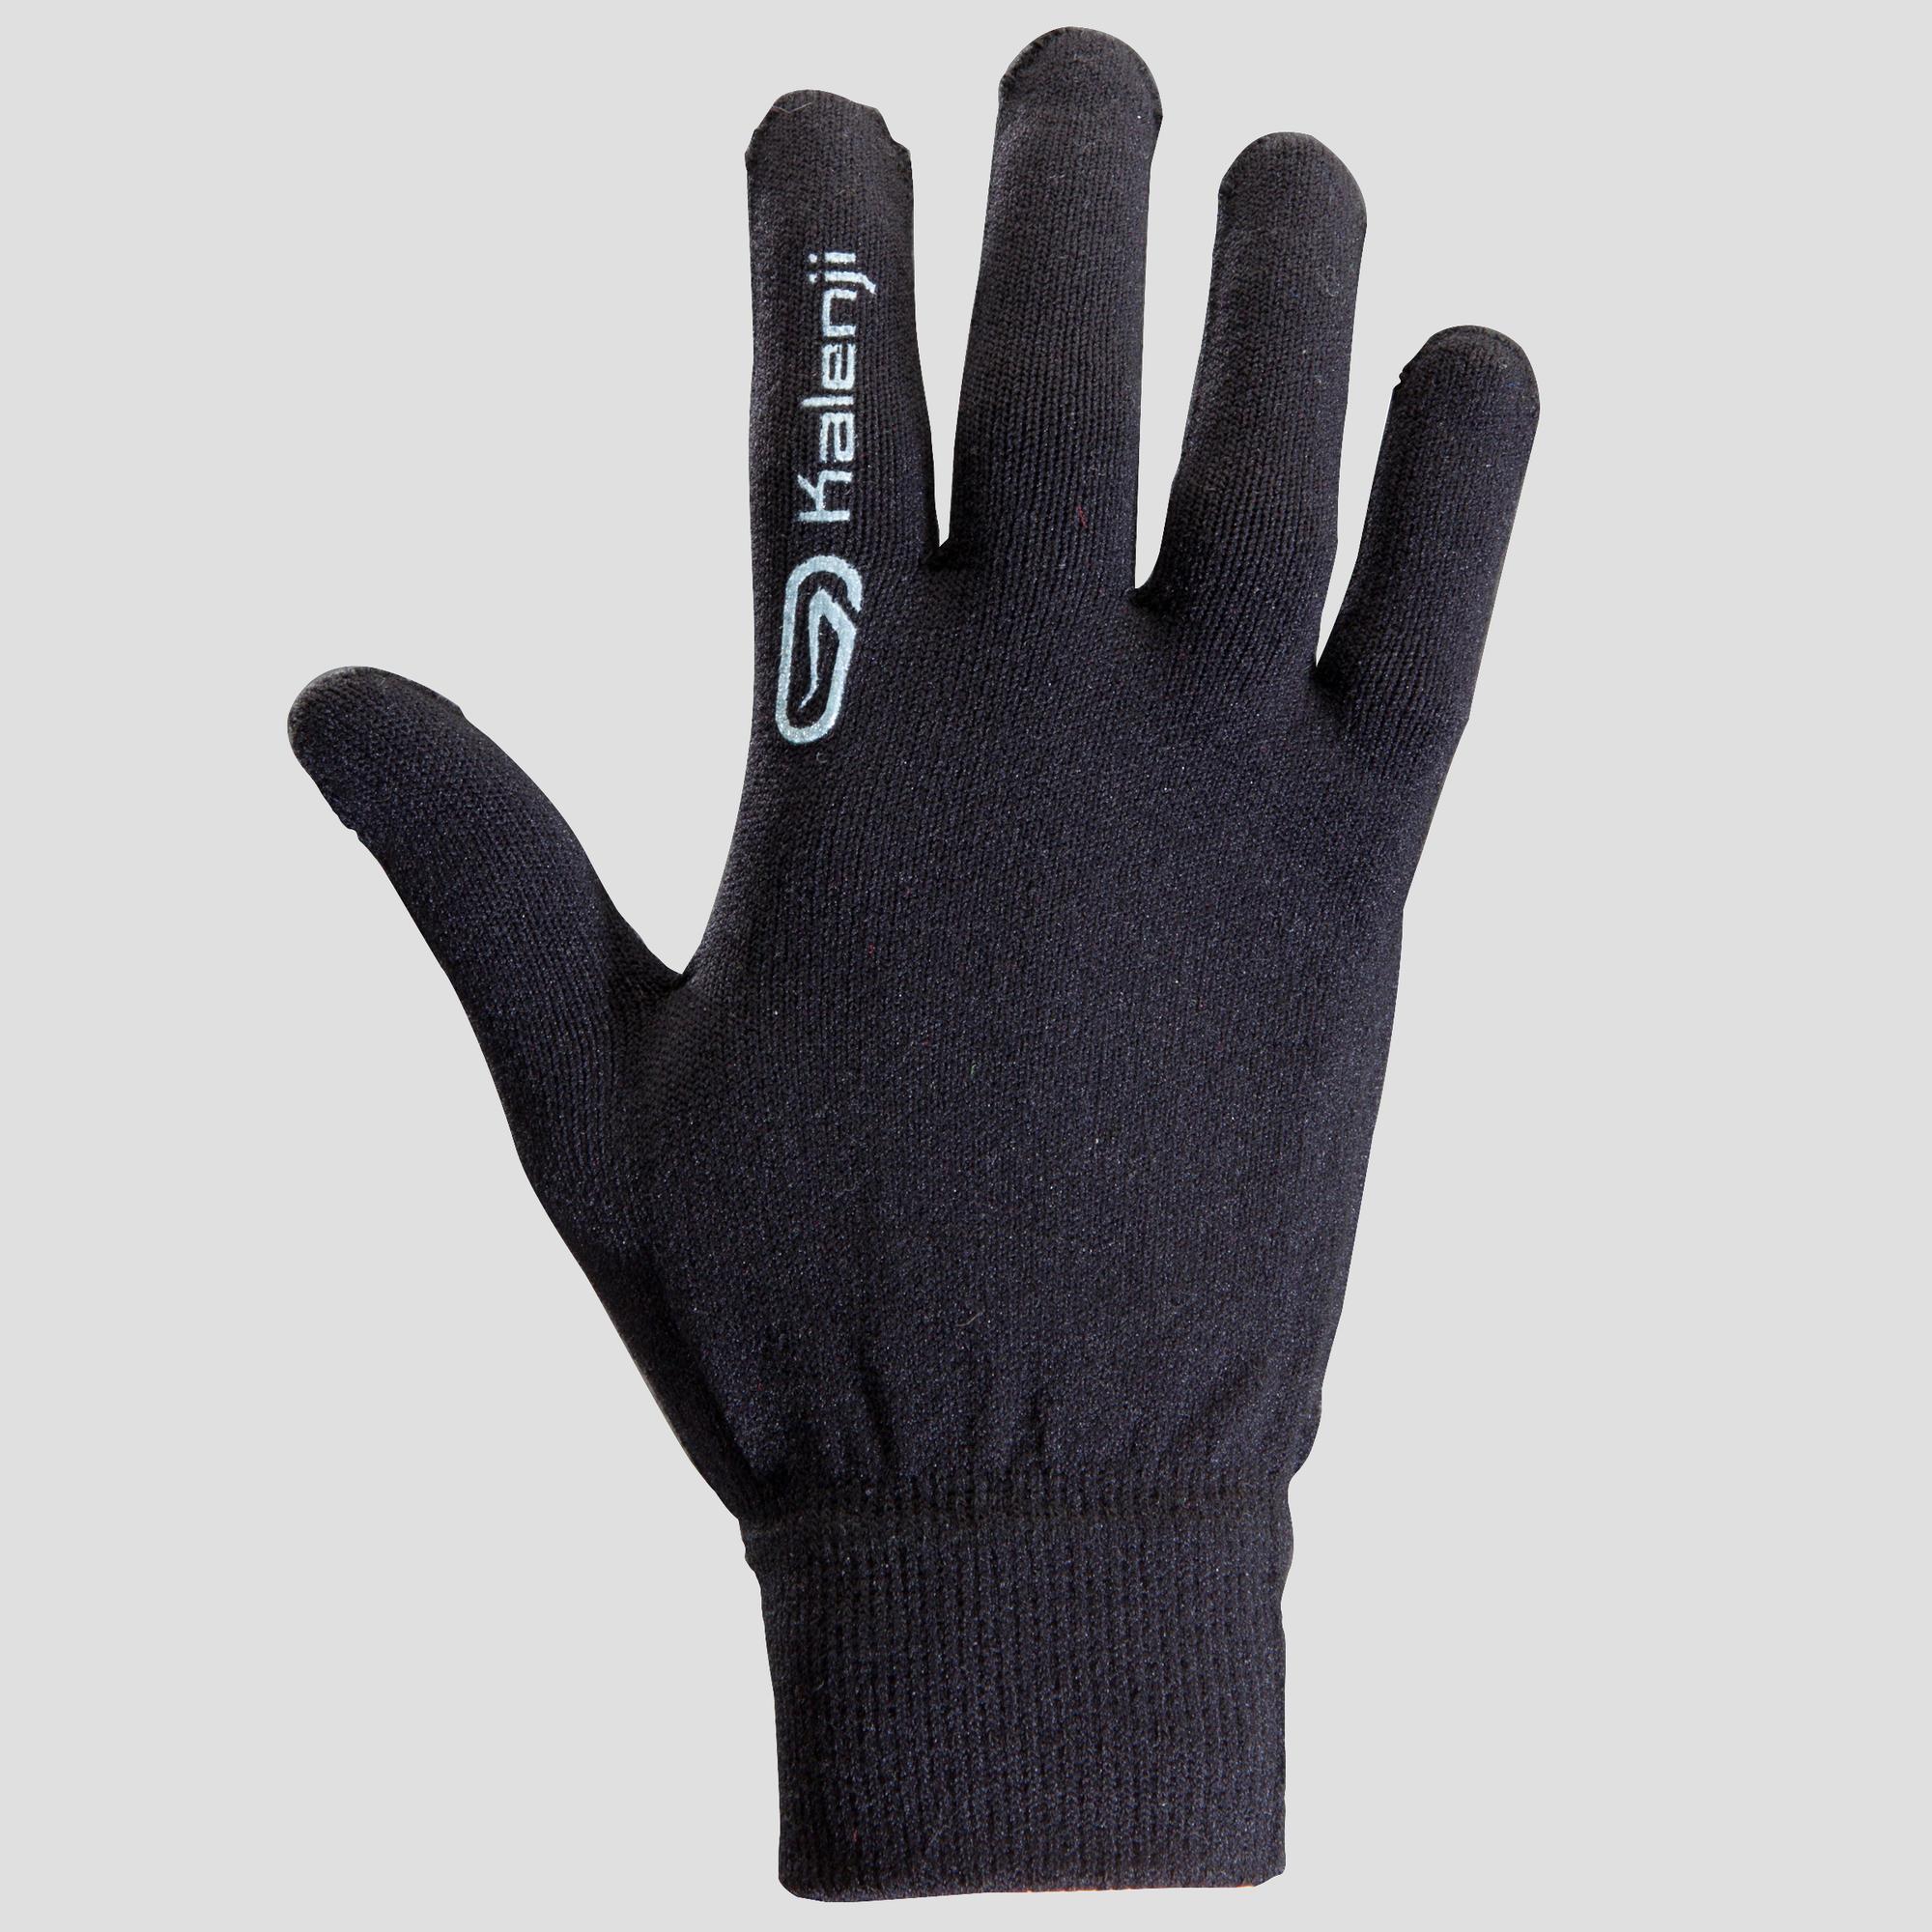 Seamless children's athletics gloves 